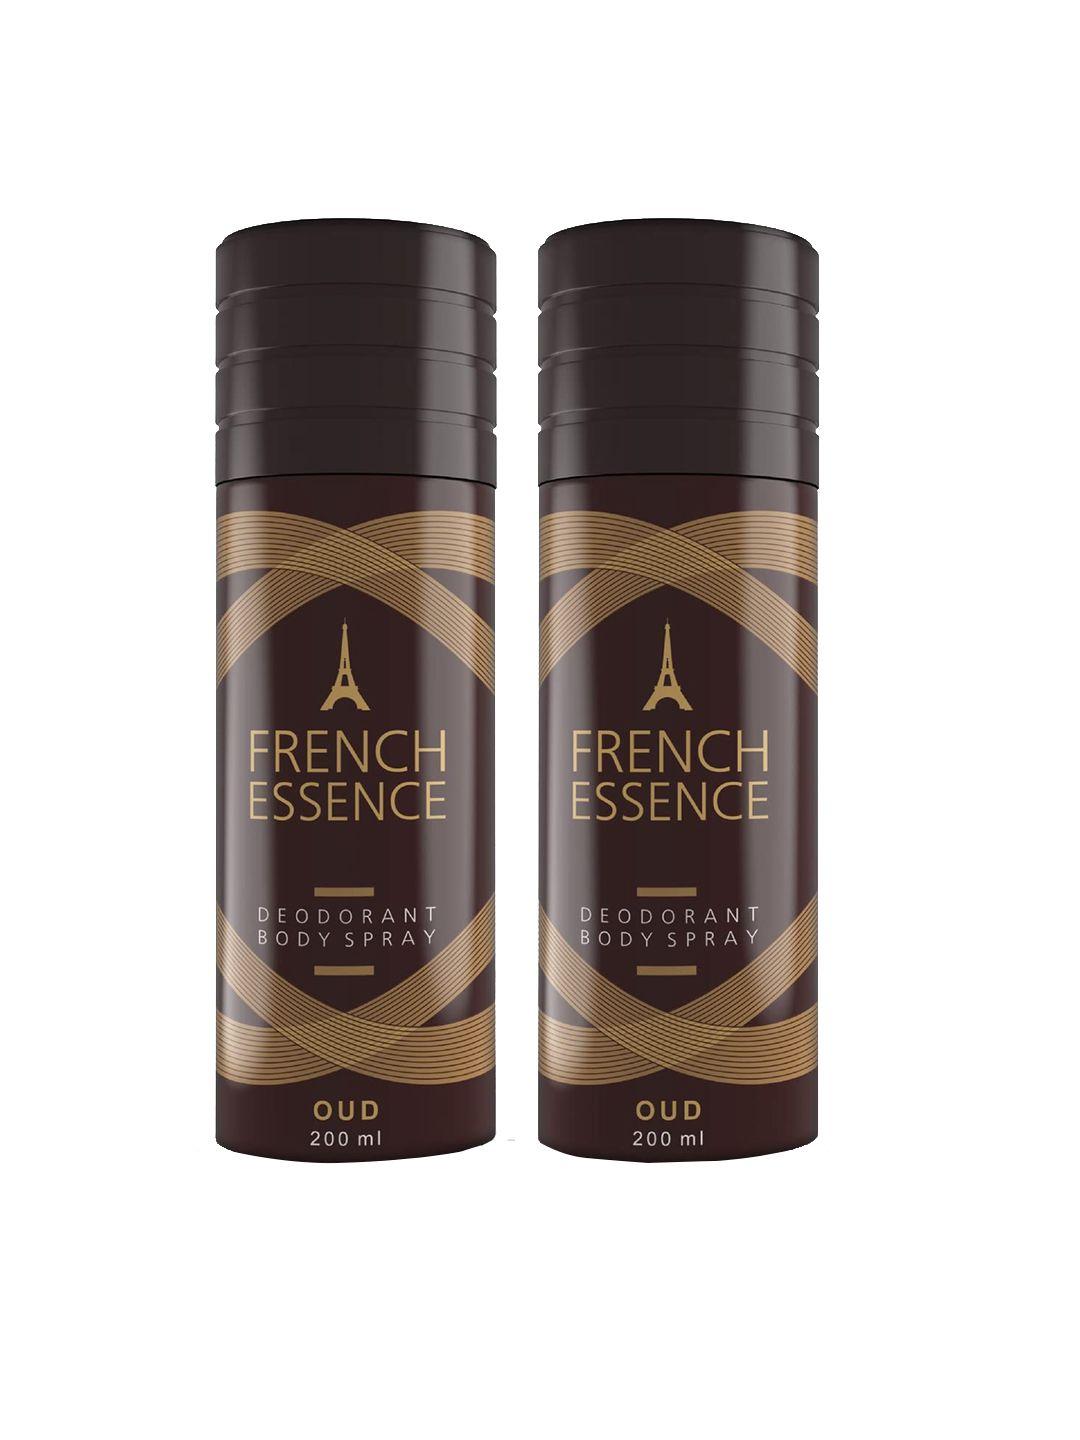 french essence set of 2 oud deodorant body spray 200 ml each